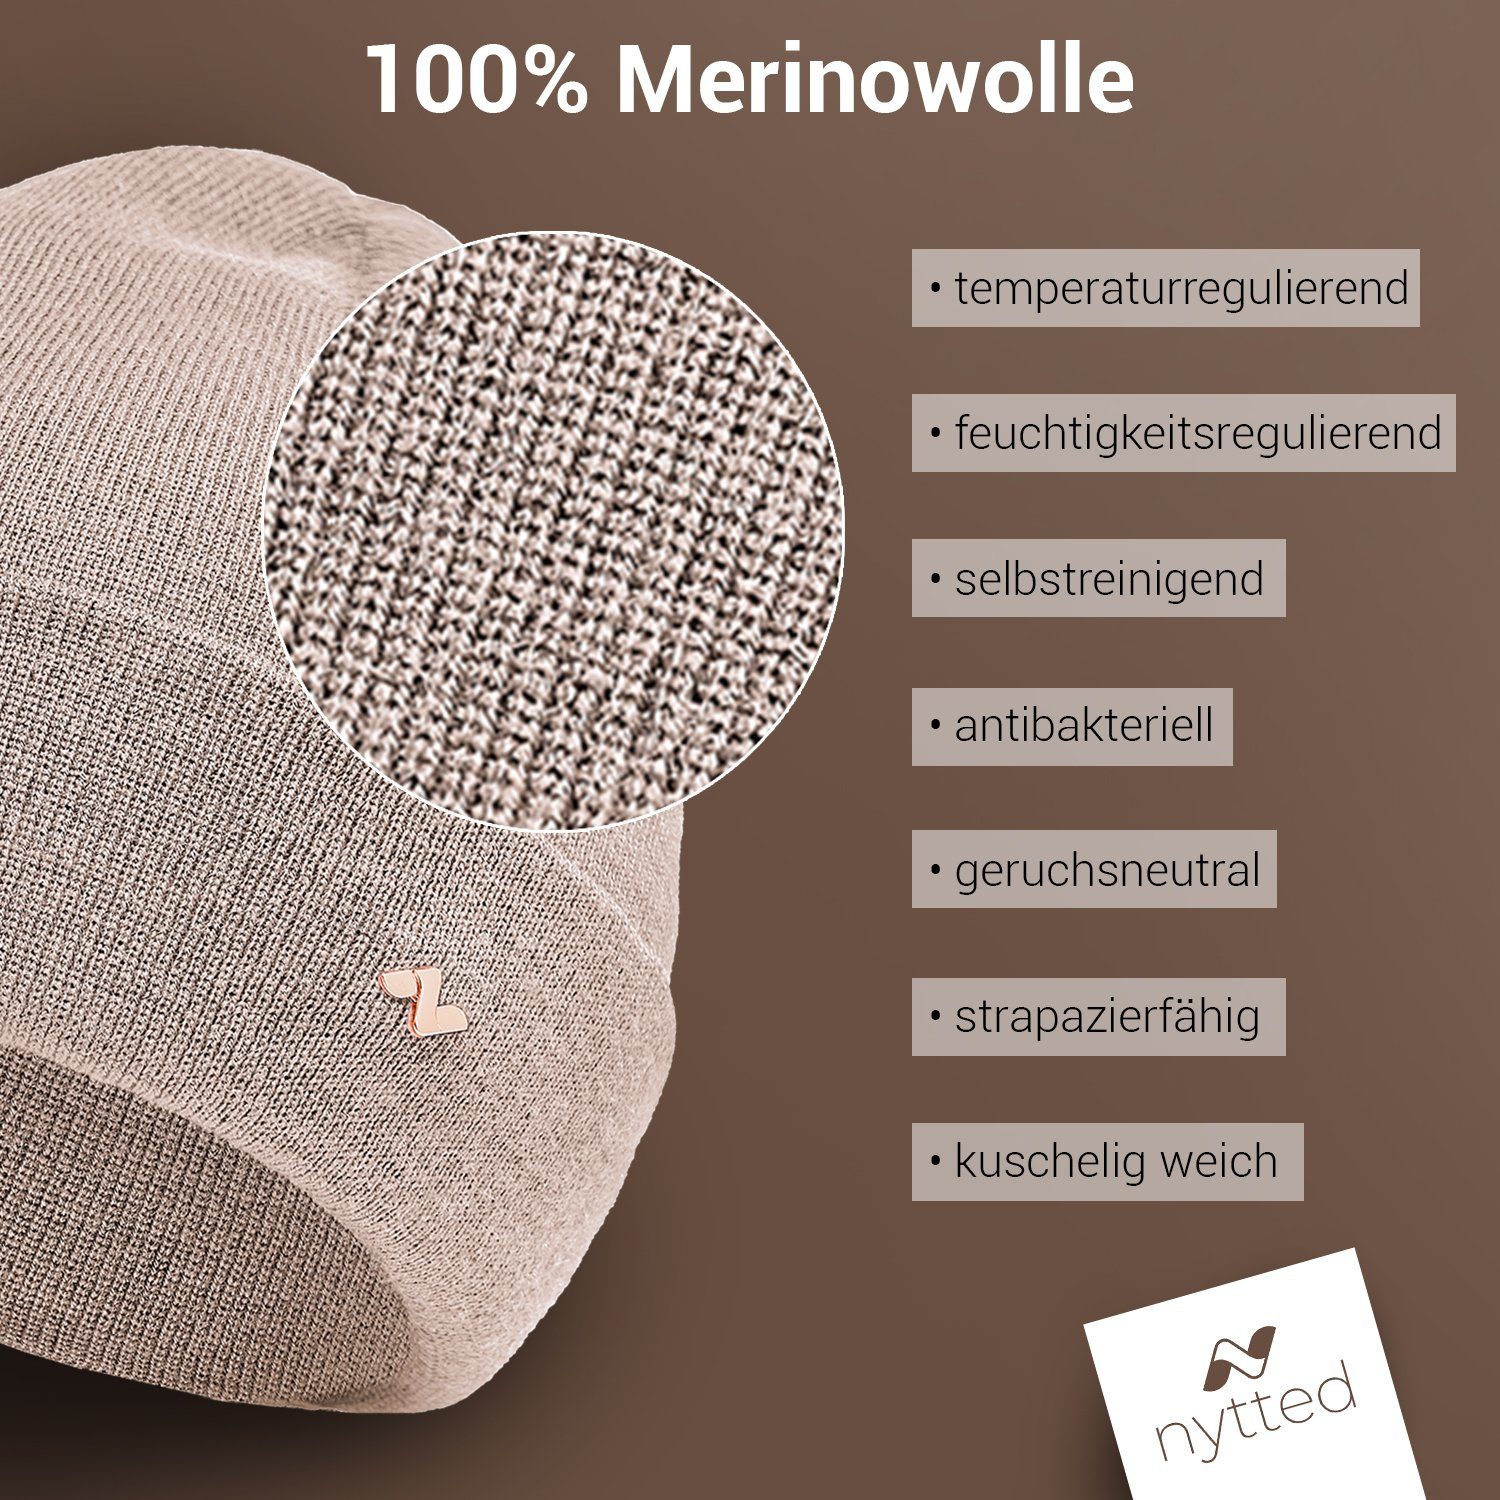 Made Herren Merino-Wolle - für 100% in Damen NYTTED® Germany Wintermütze - & sand Beanie -